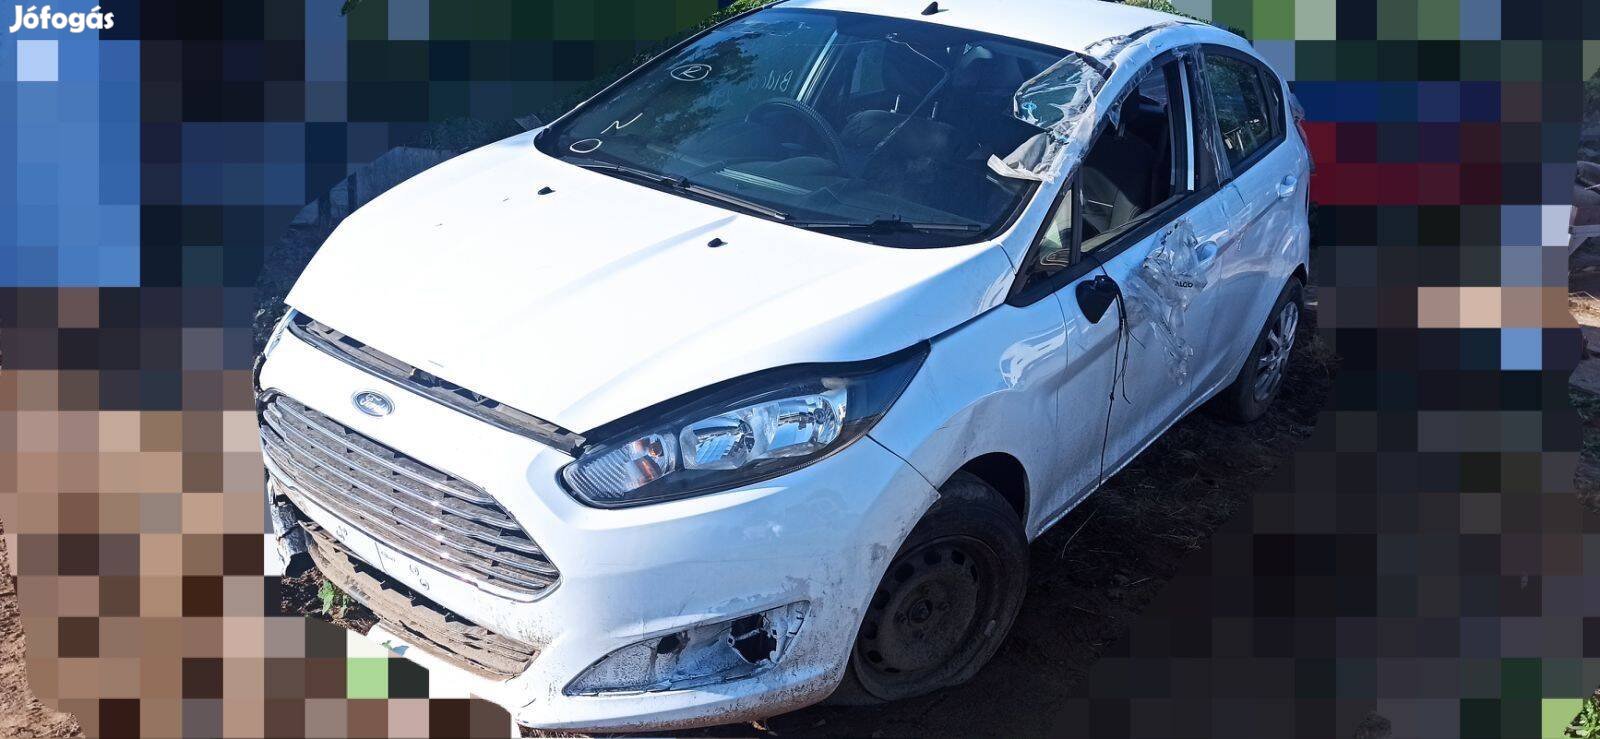 Ford Fiesta 1.5 TDCI 2014 Évj alkatrészei eladó